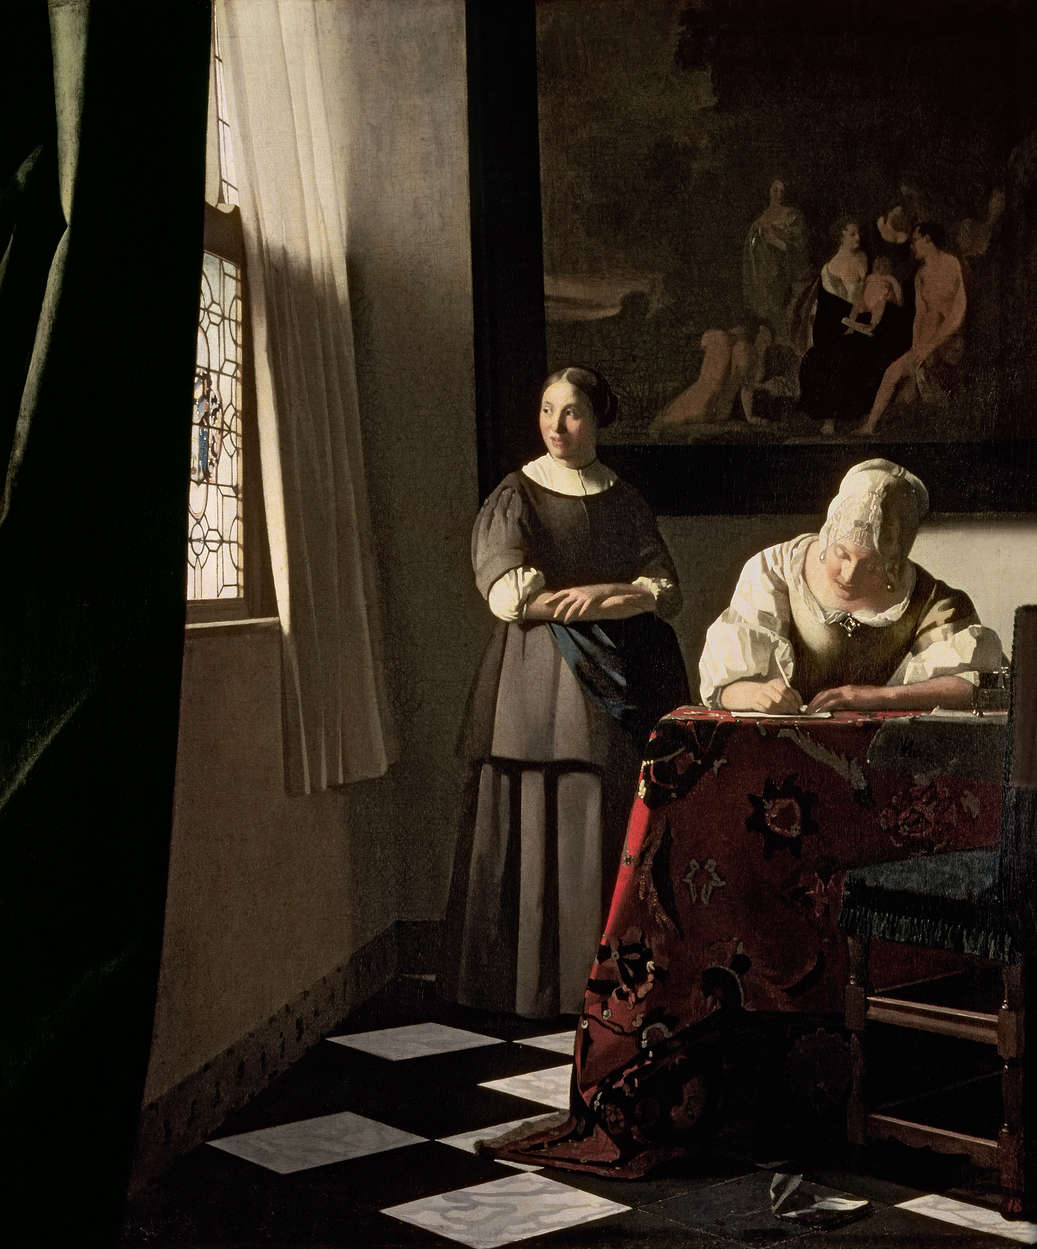             Fototapete "Dame die mit Magd einen Brief schreibt" von Jan Vermeer
        